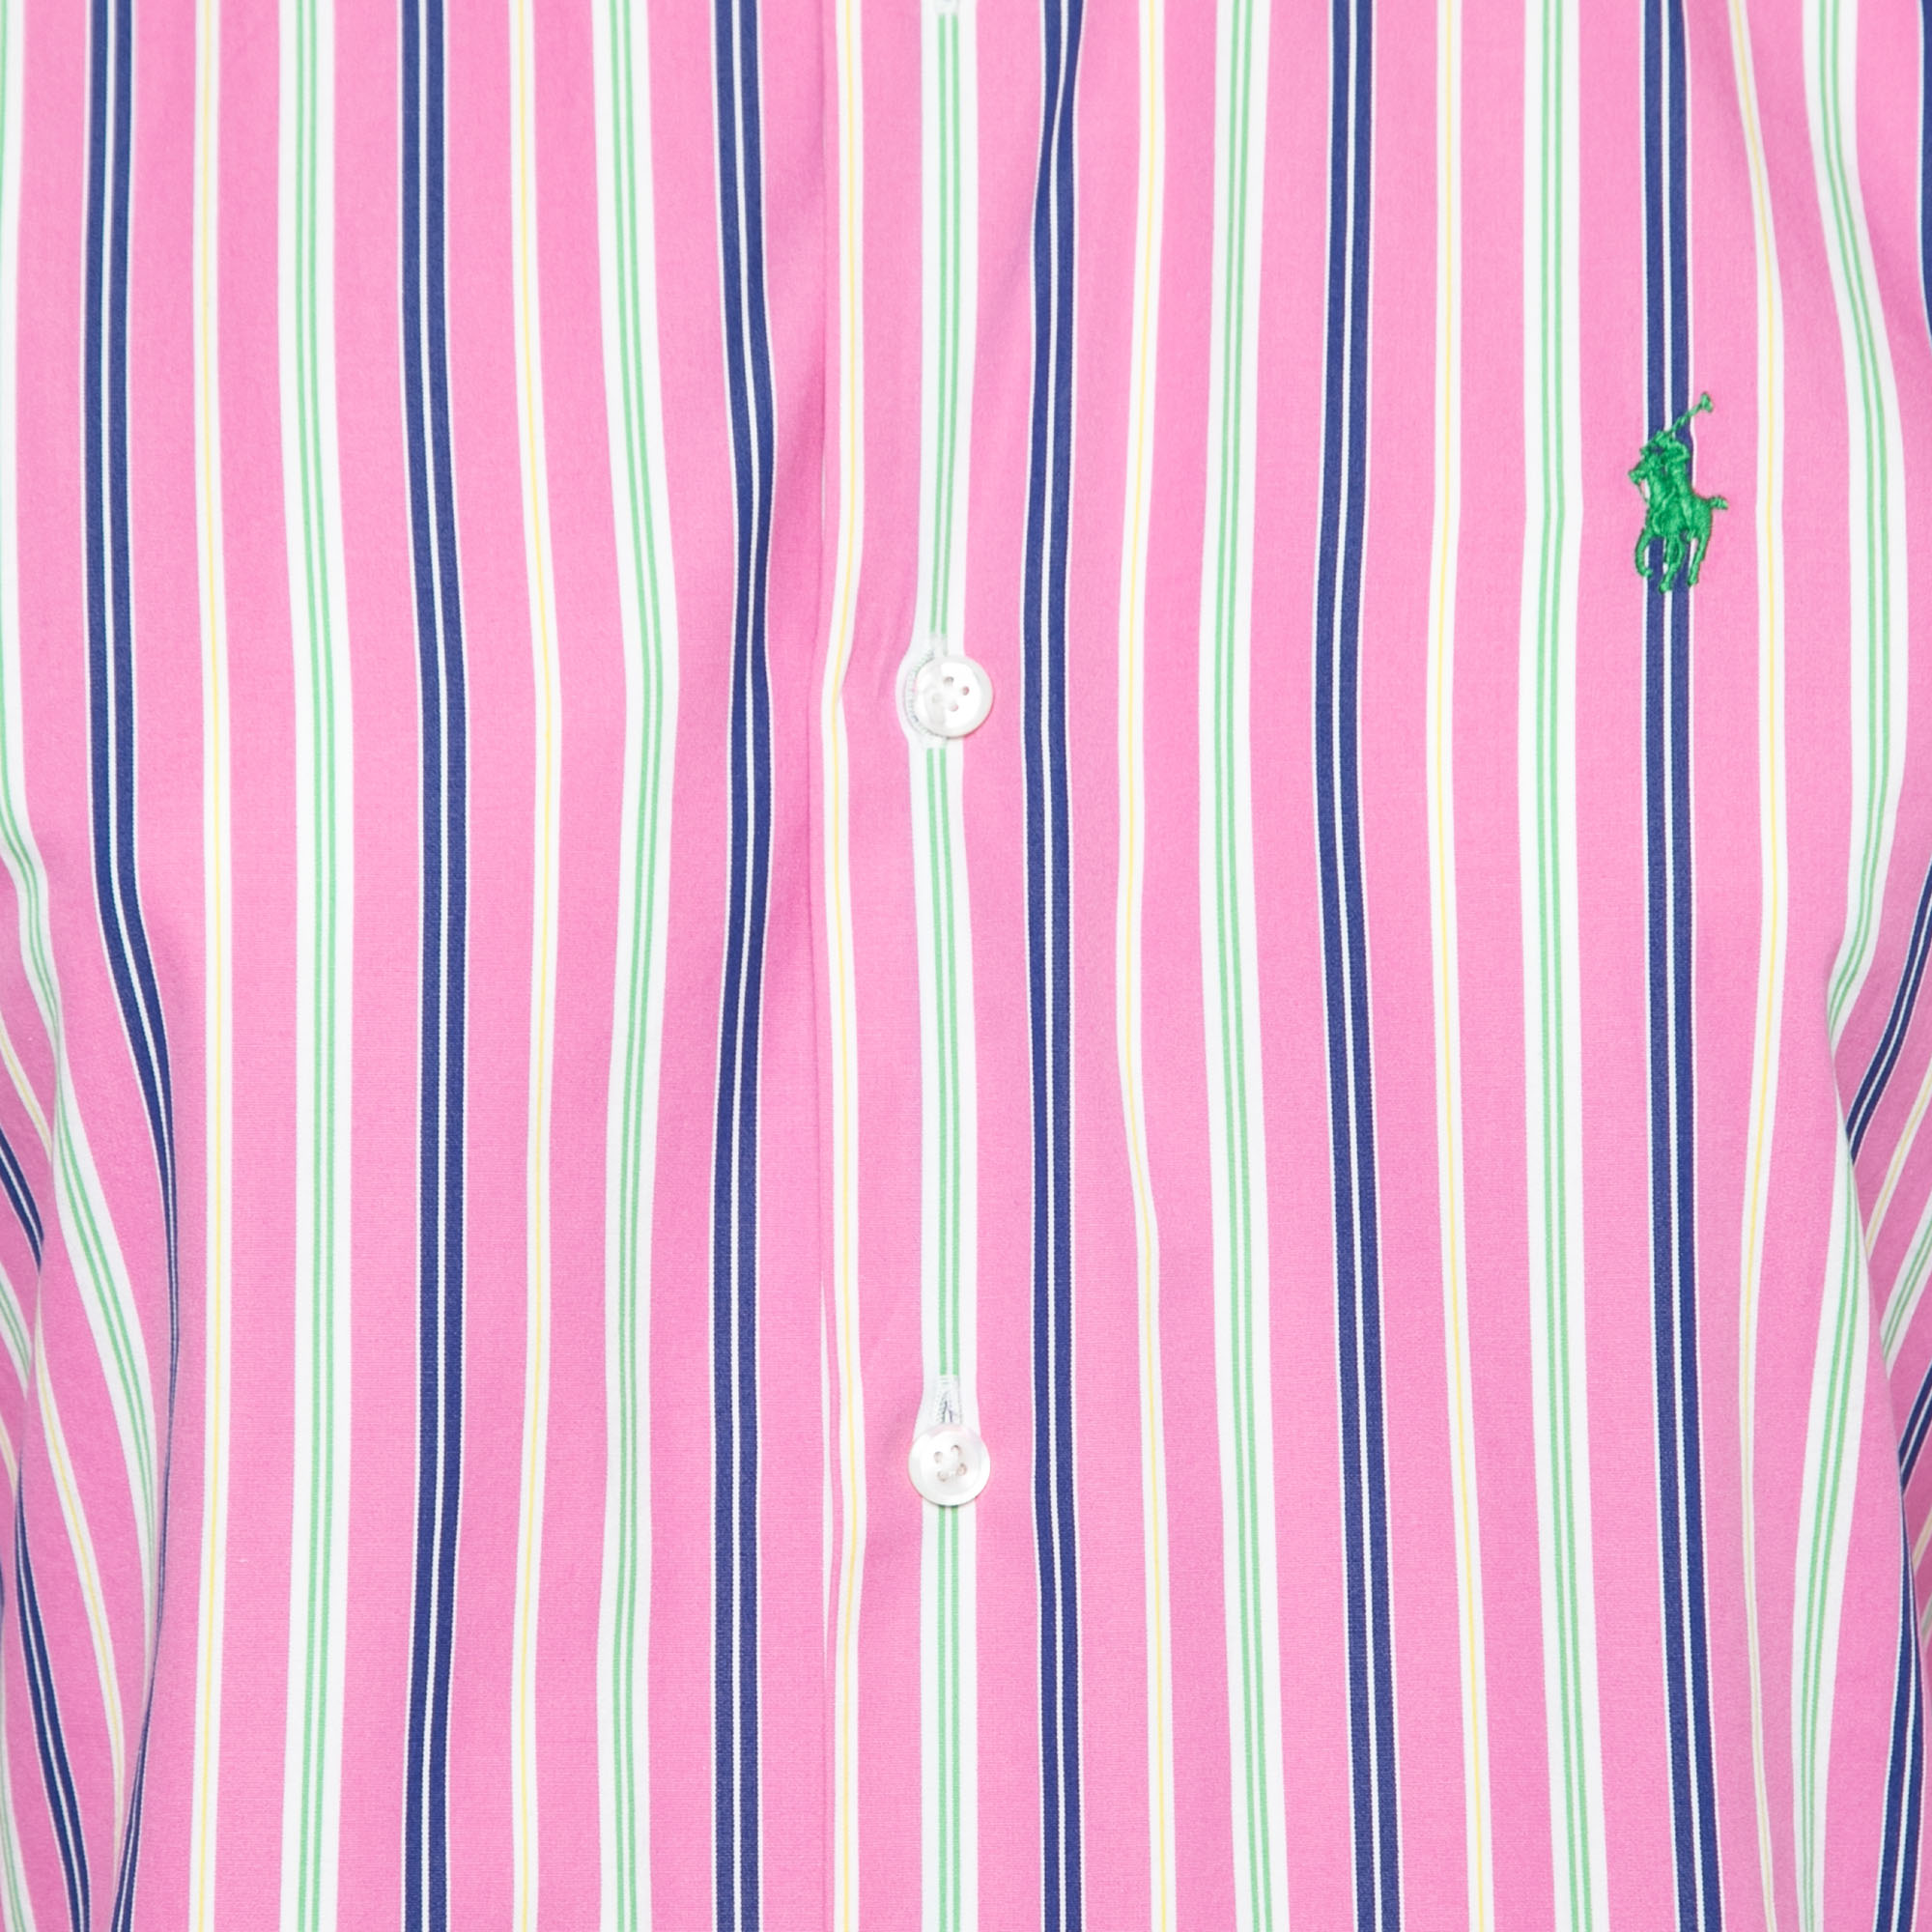 Ralph Lauren Pink Striped Cotton Slim Fit Button Front Shirt L